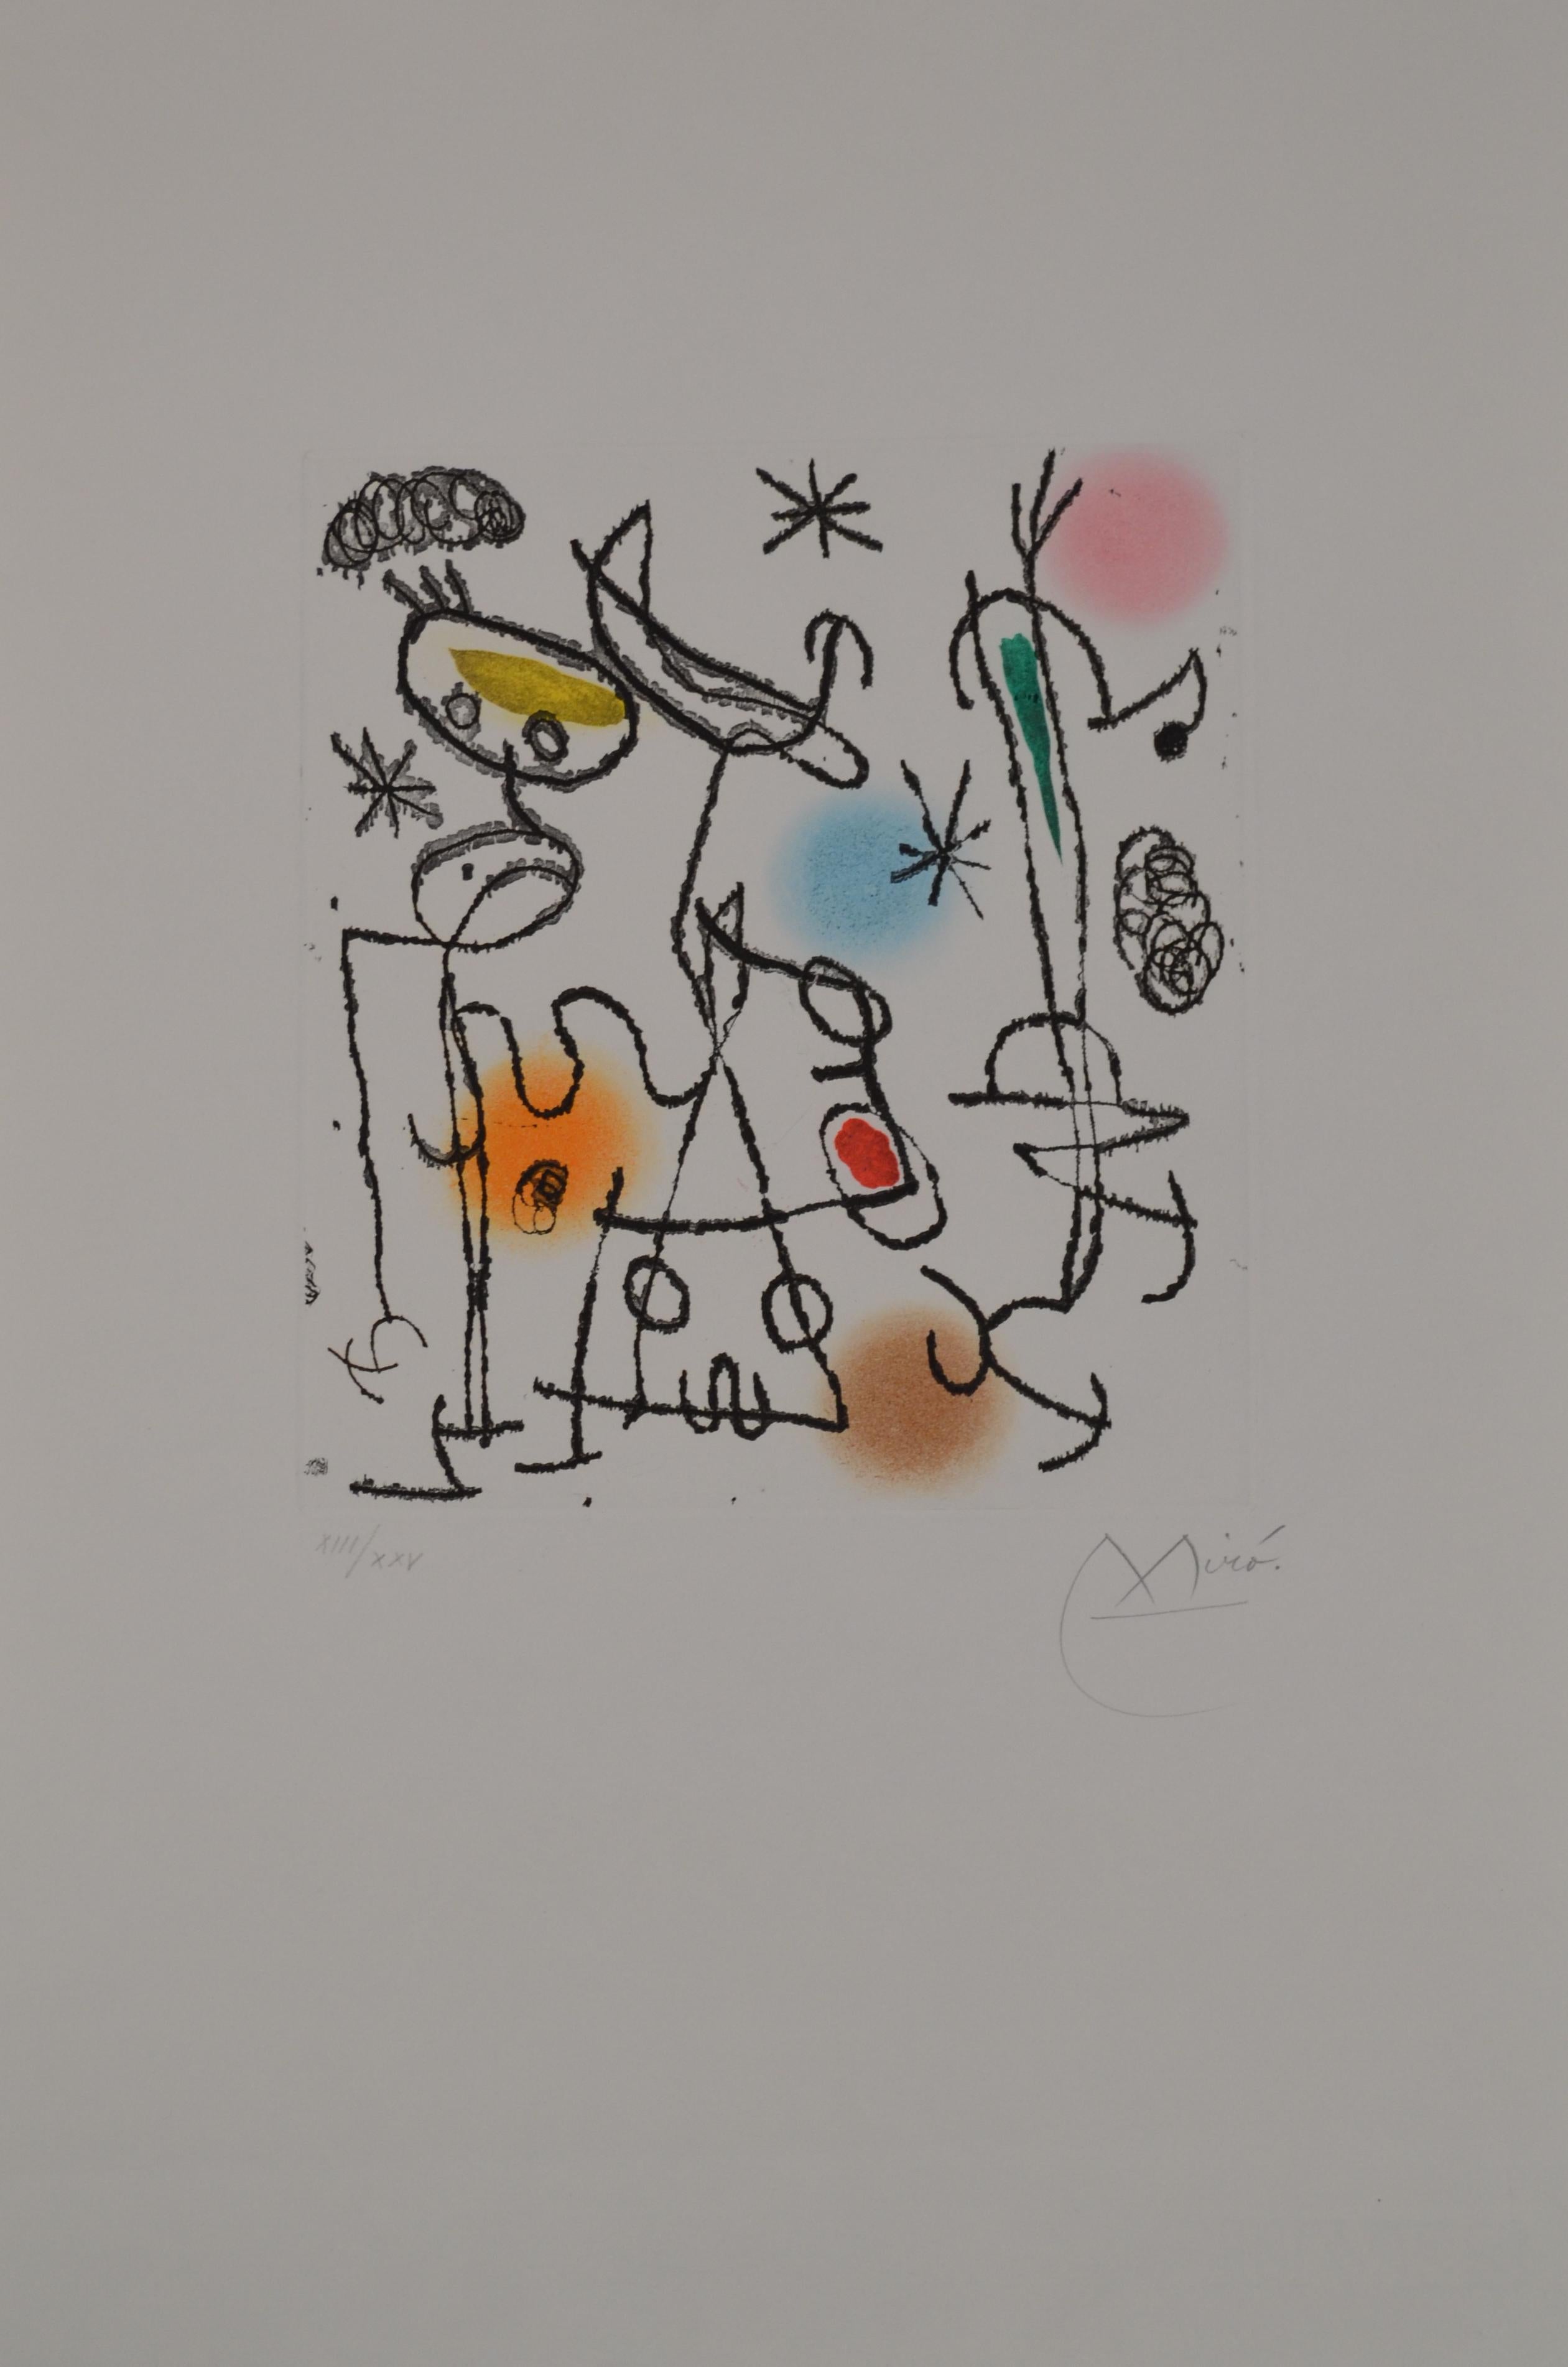 Paroles Peintres III - D446 - Print by Joan Miró